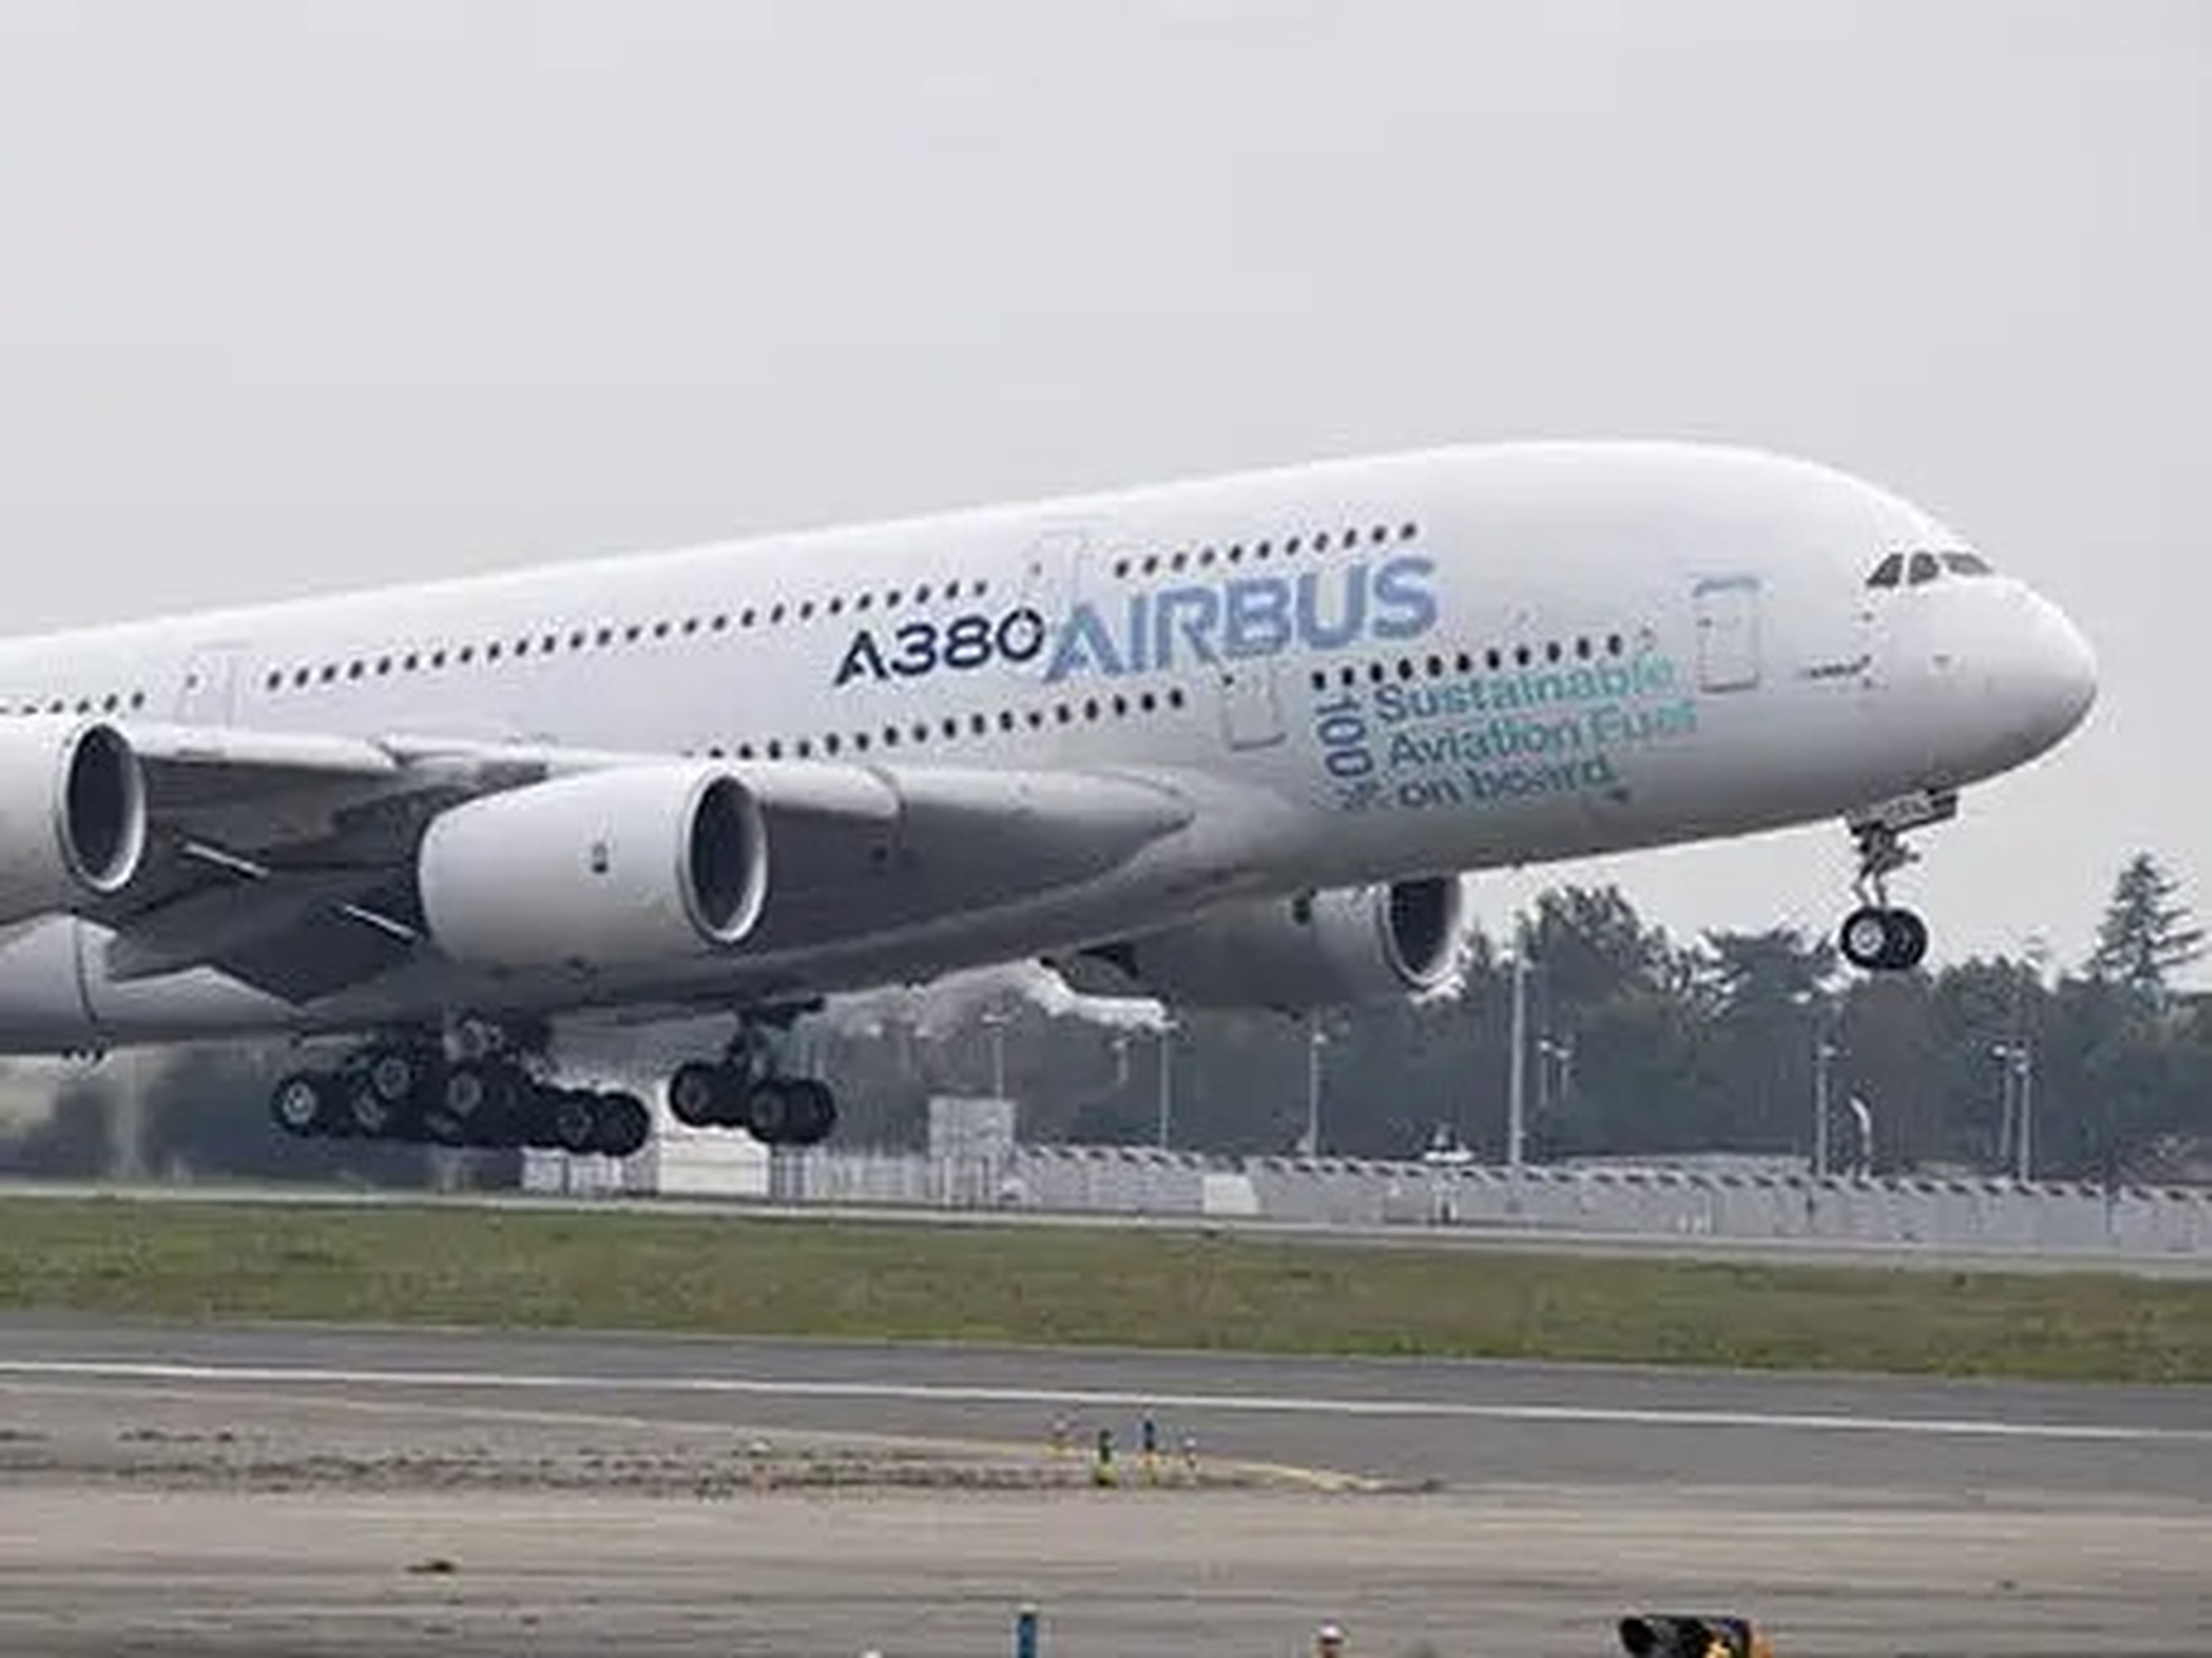 A380 test flight.